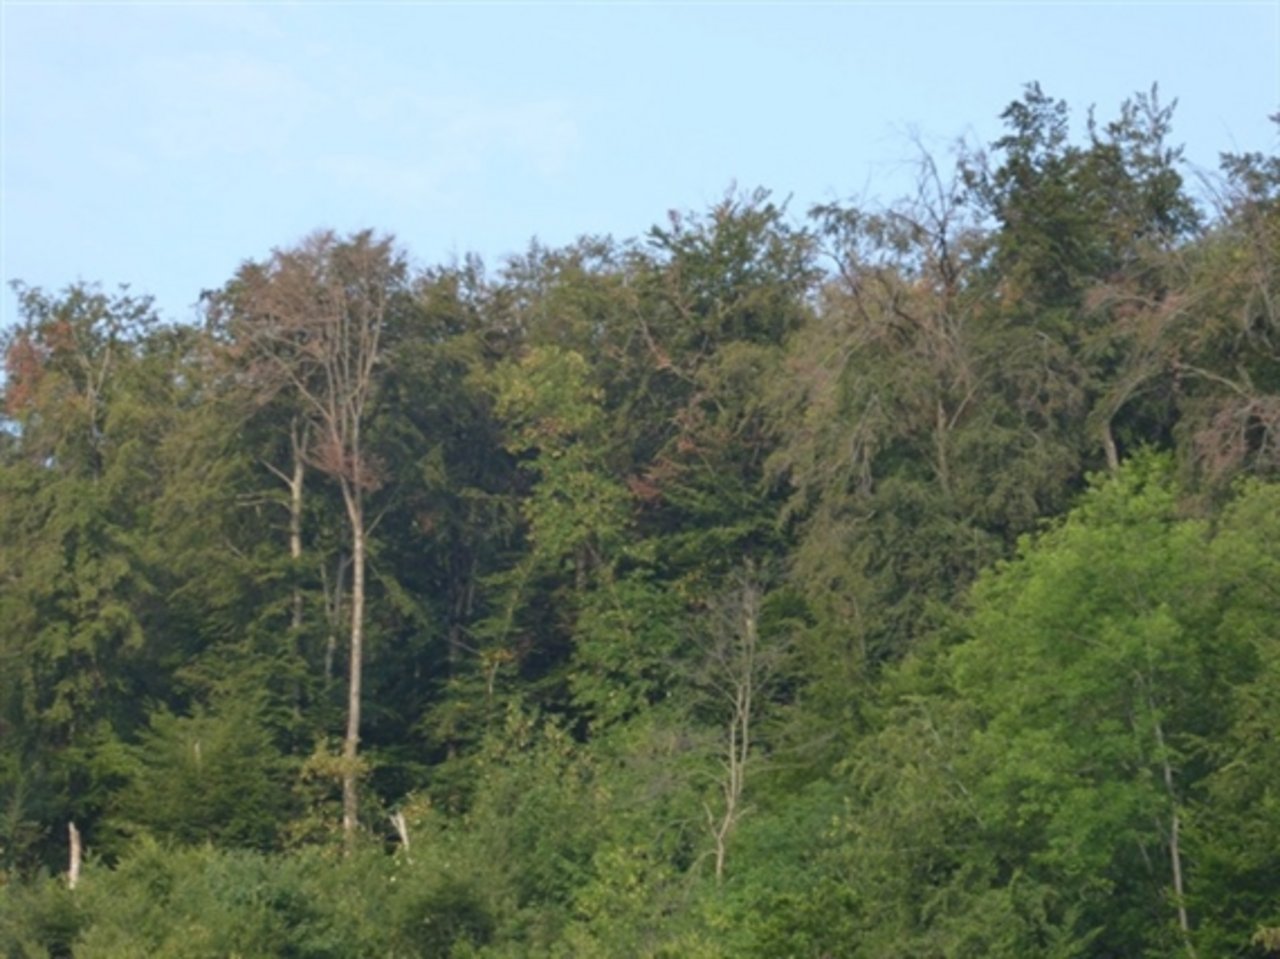  An diesen Bäumen auf dem Gemeindegebiet von Sissach BL sind die Trockenheitsschäden gut erkennbar. (Bild zVg)